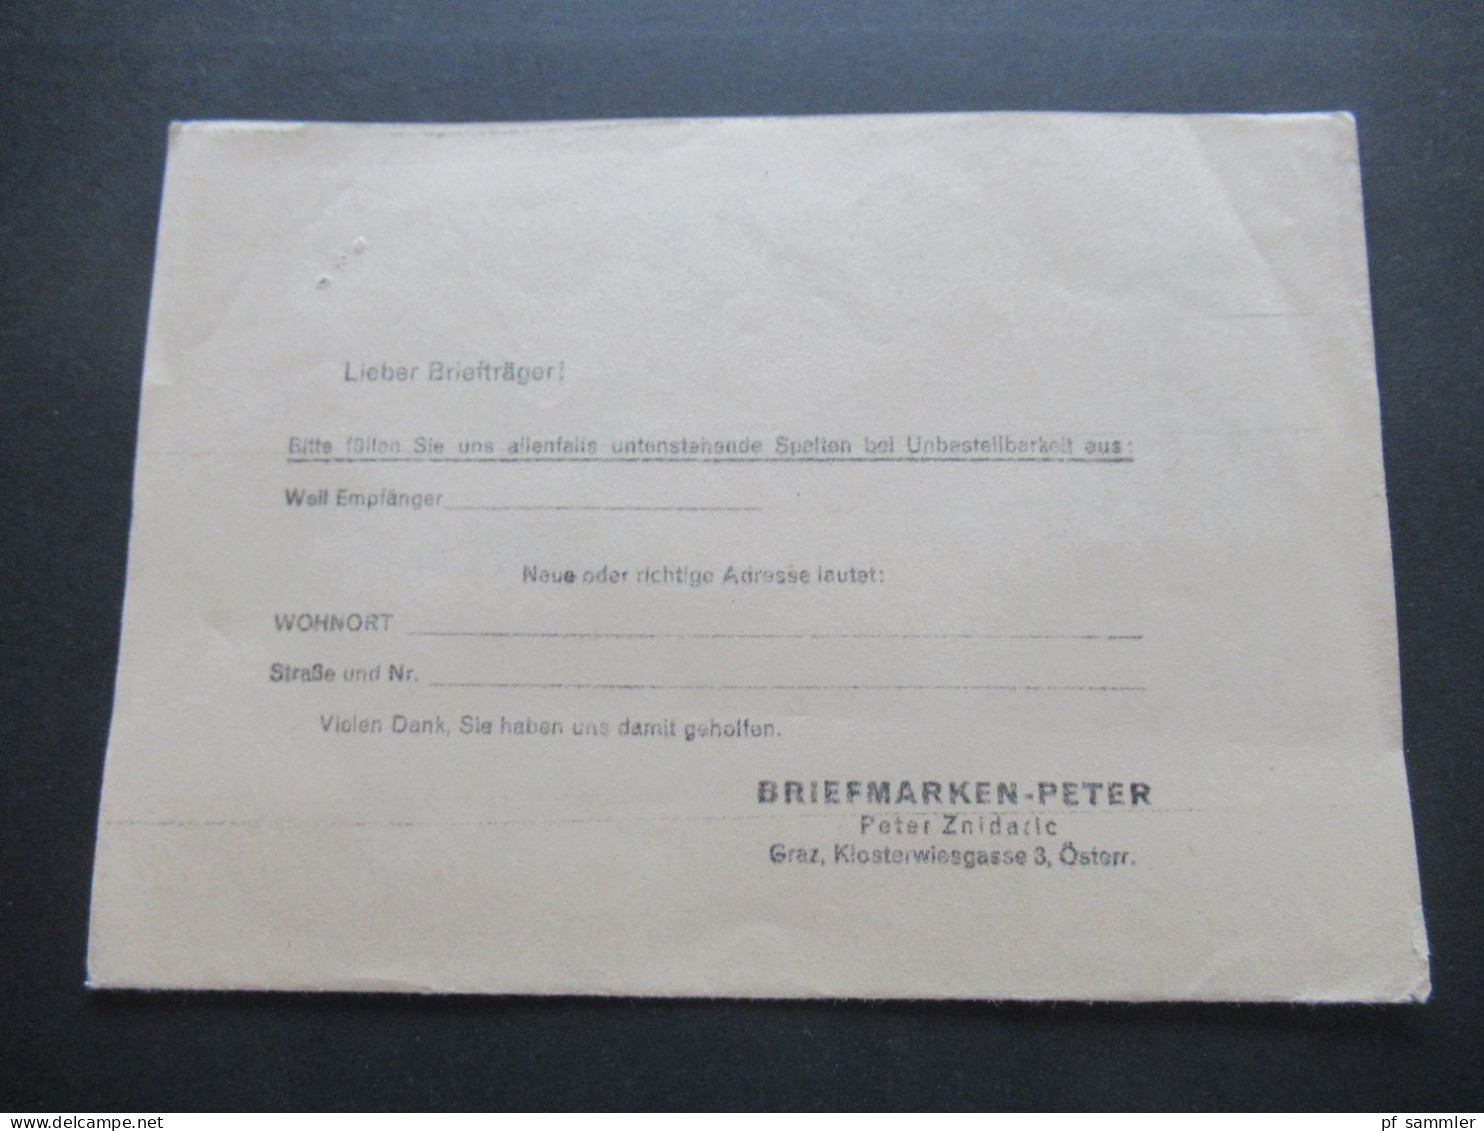 Österreich 1965 Freimarken EF Drucksache Briefmarken Peter Graz Klosterwiesgasse 4 / Austria Netto Ist Erschienen!! - Cartas & Documentos